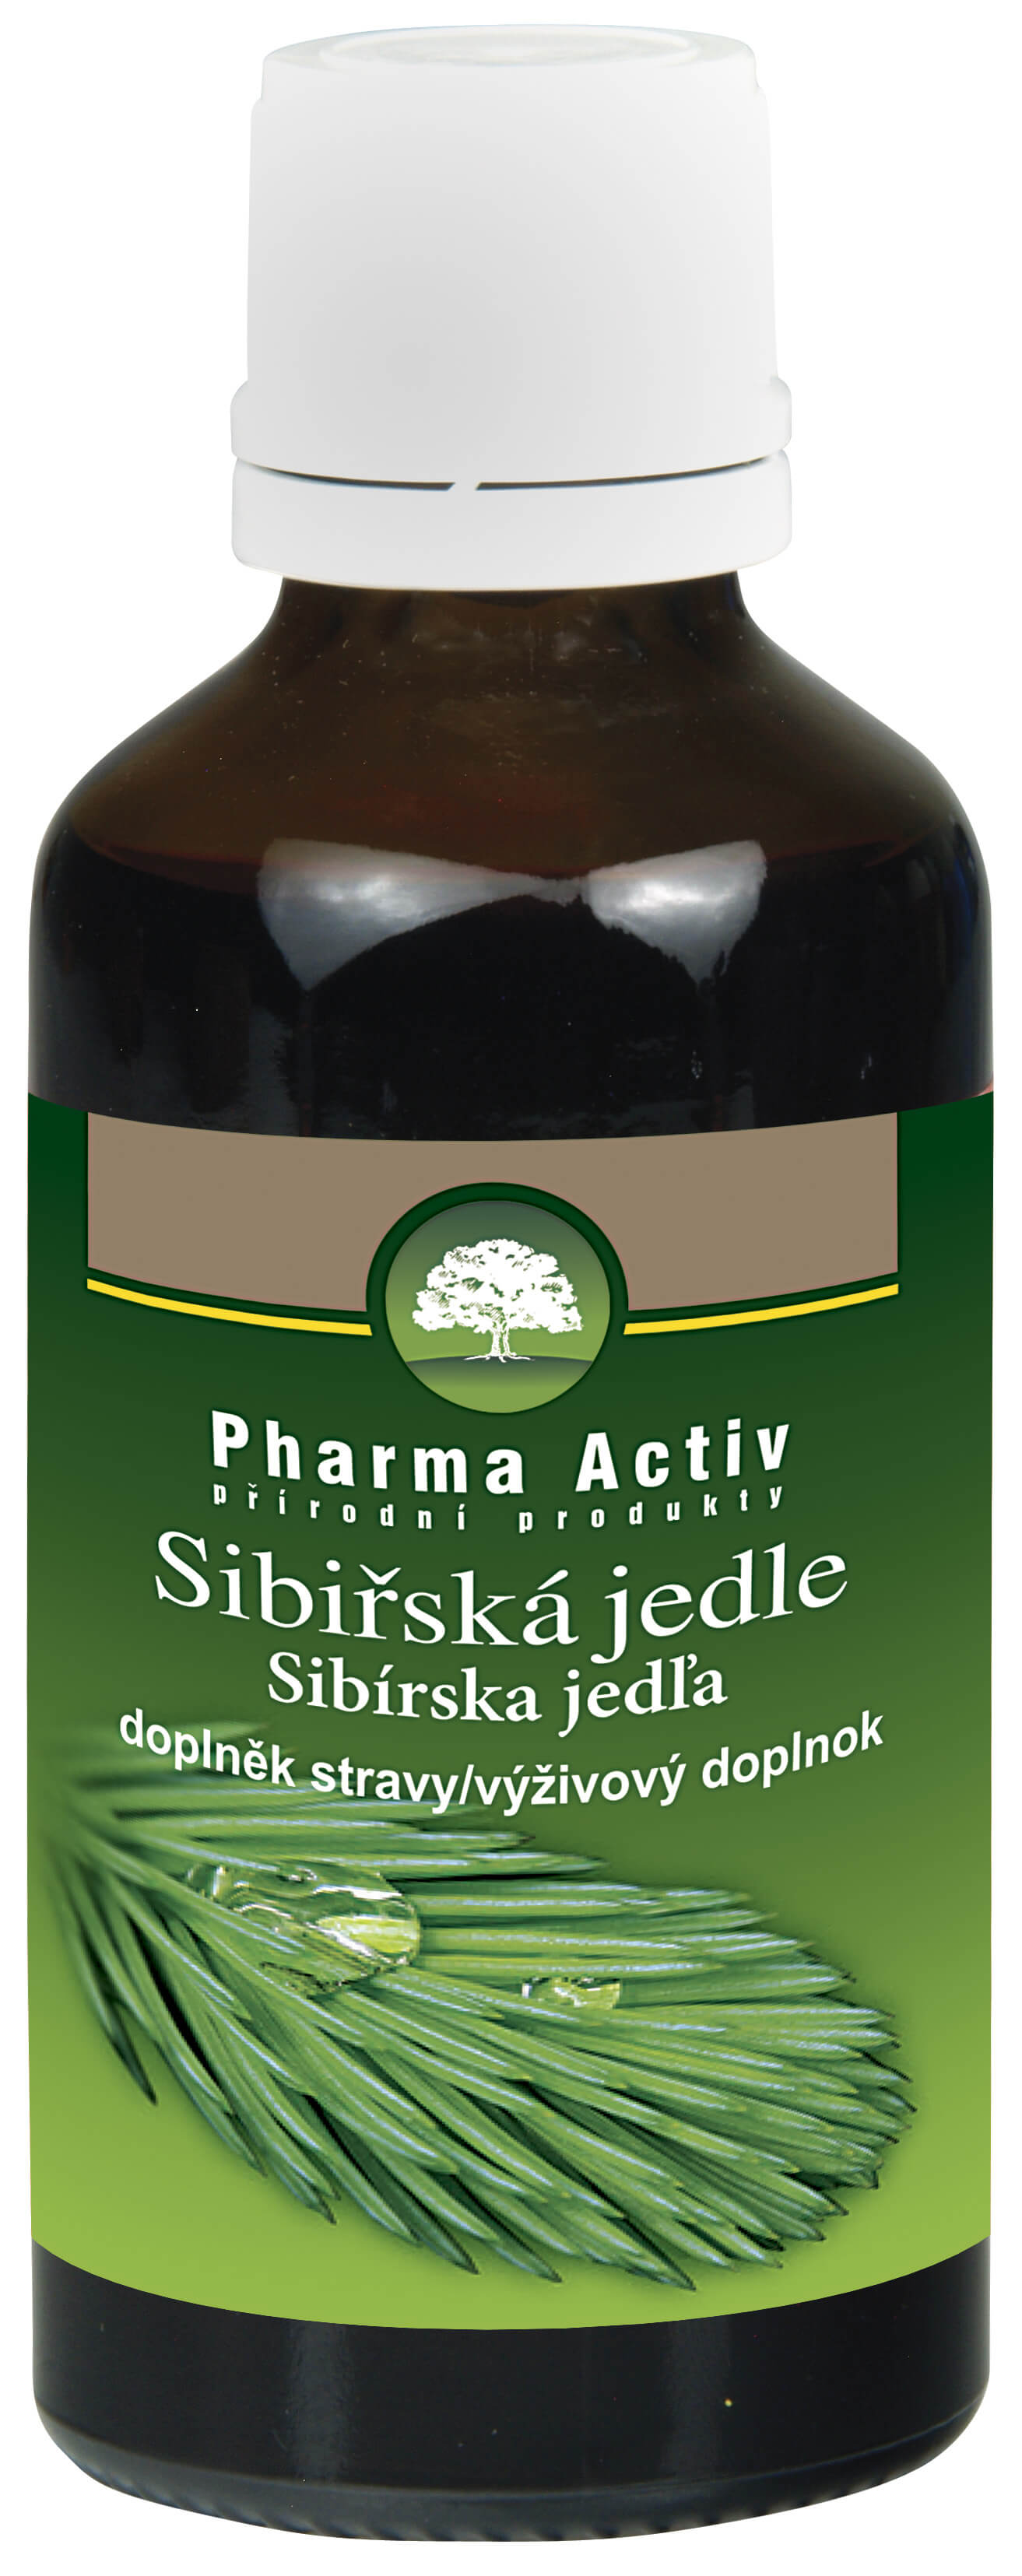 Zobrazit detail výrobku Pharma Activ Olej ze sibiřské jedle bělokoré 50 ml